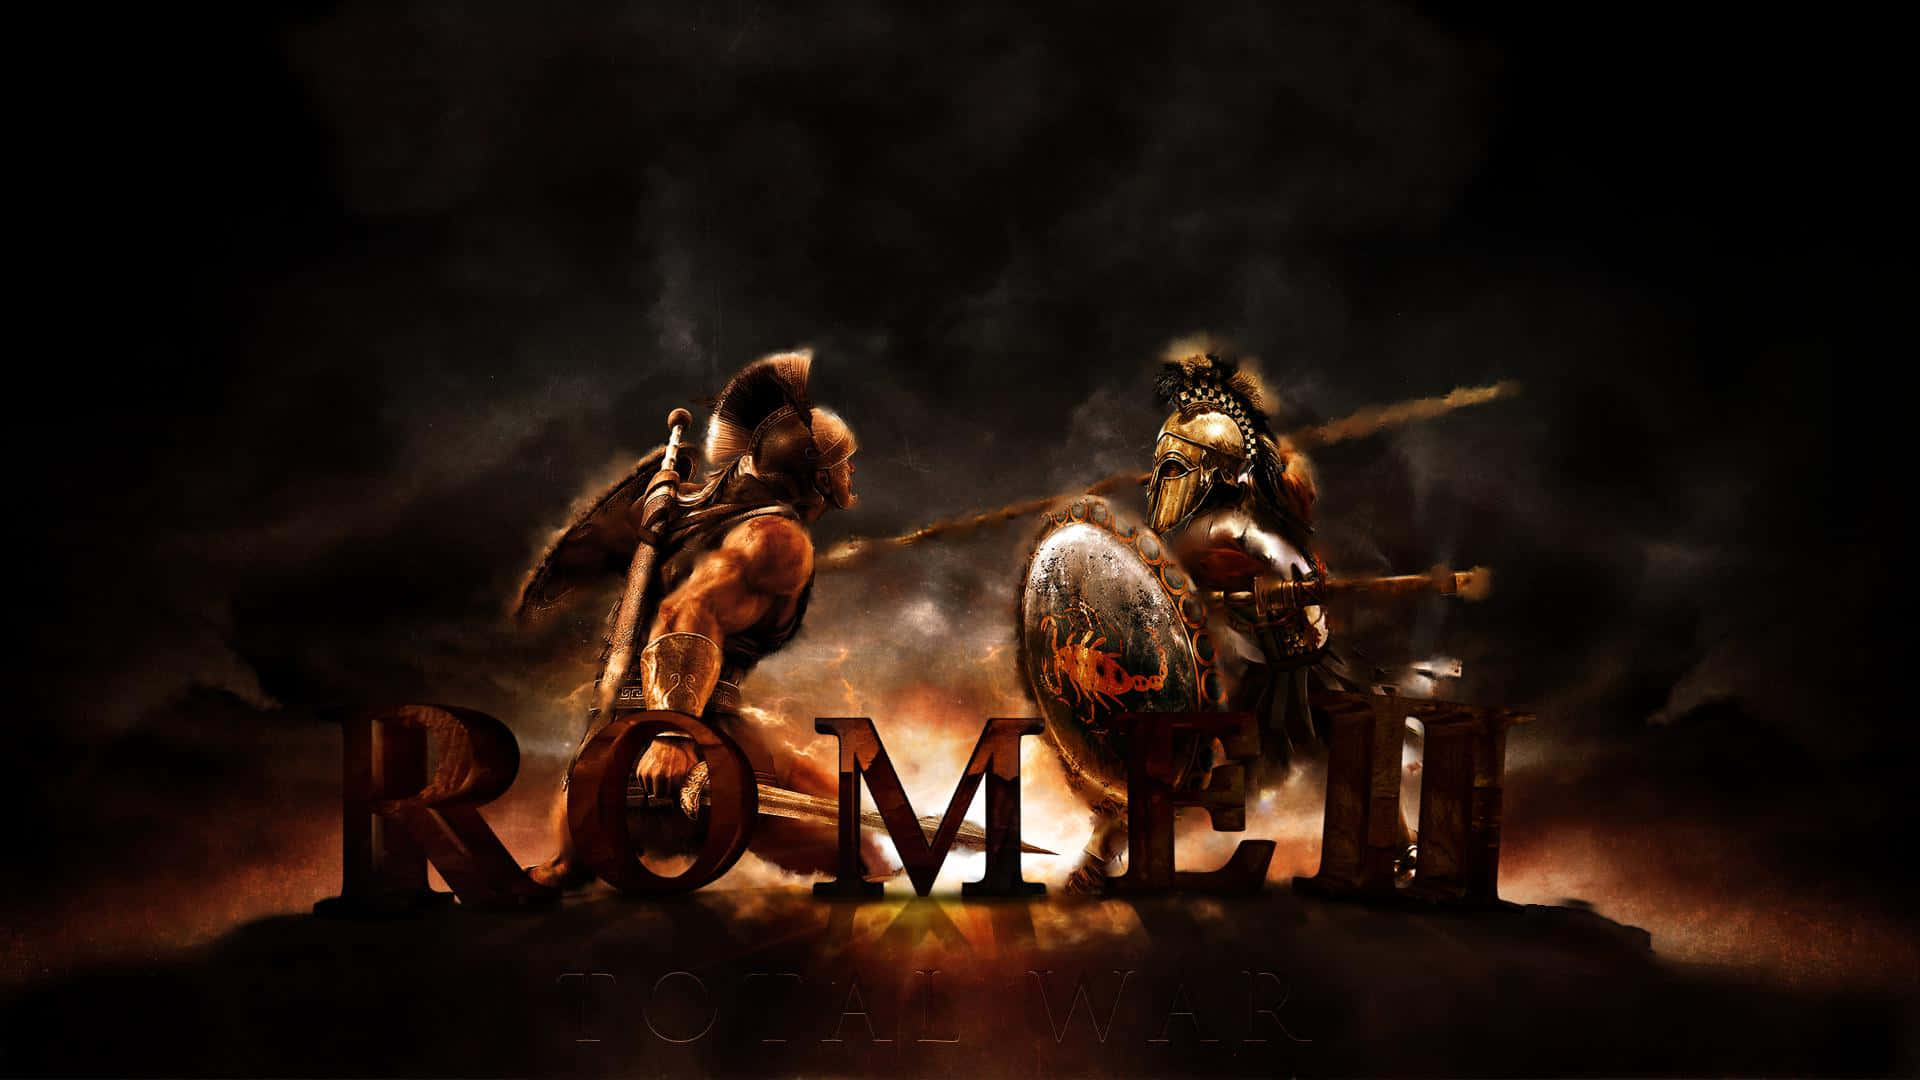 !Før din legion til sejr og styr det romerske imperium i Total War Rome 2!